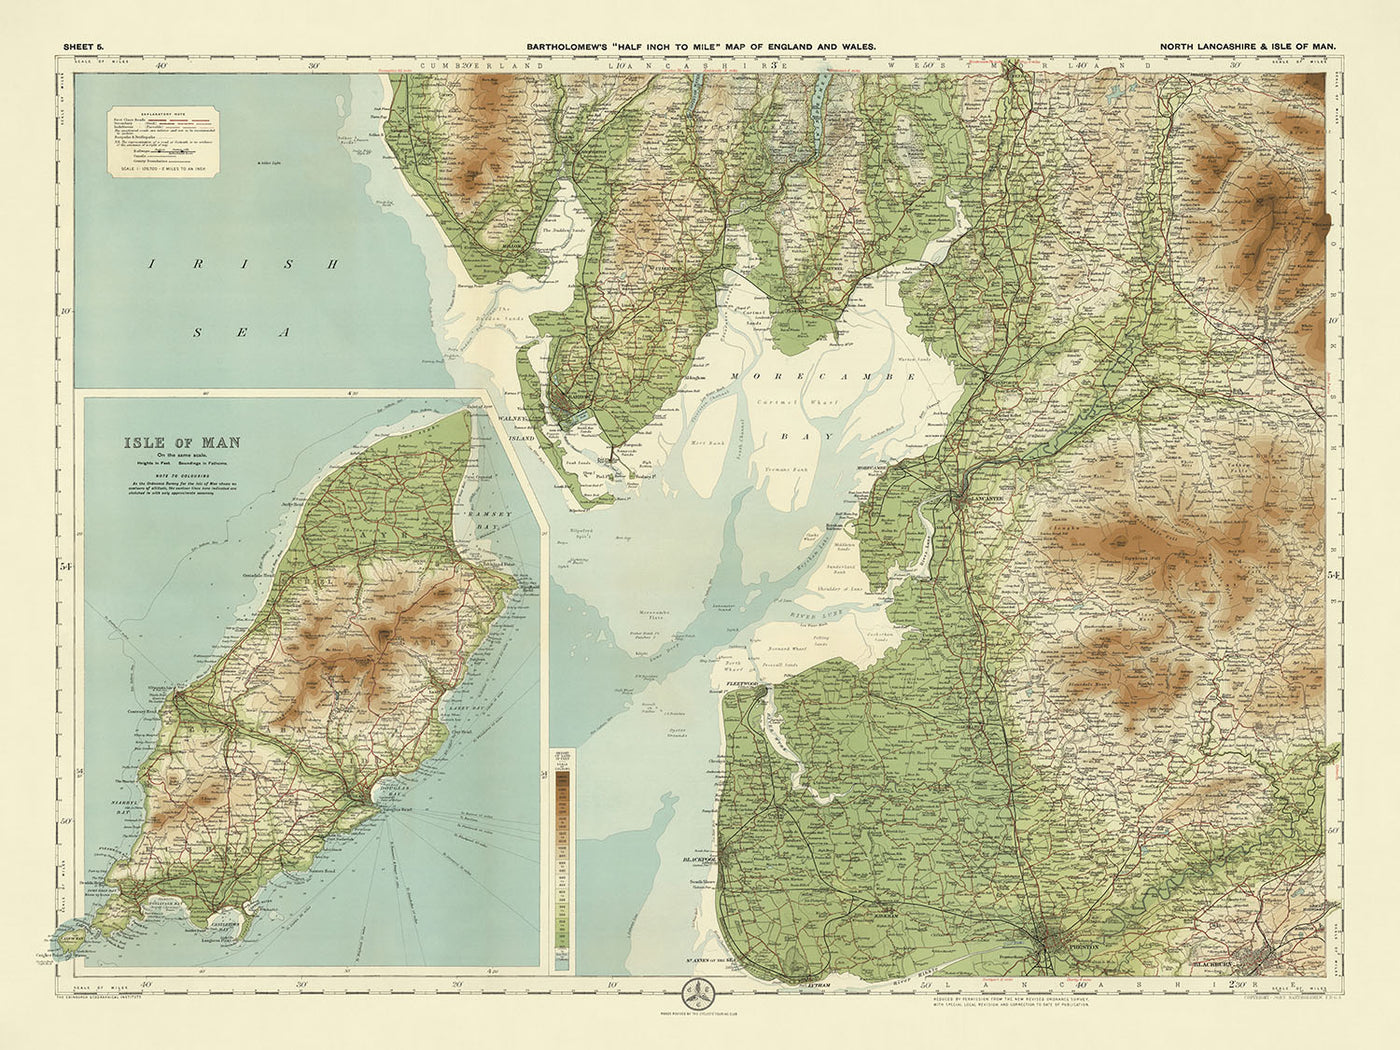 Ancienne carte OS du nord du Lancashire et de l'île de Man par Bartholomew, 1901 : Lancaster, Douglas, Morecambe, Snaefell, forêt de Bowland, château de Peel